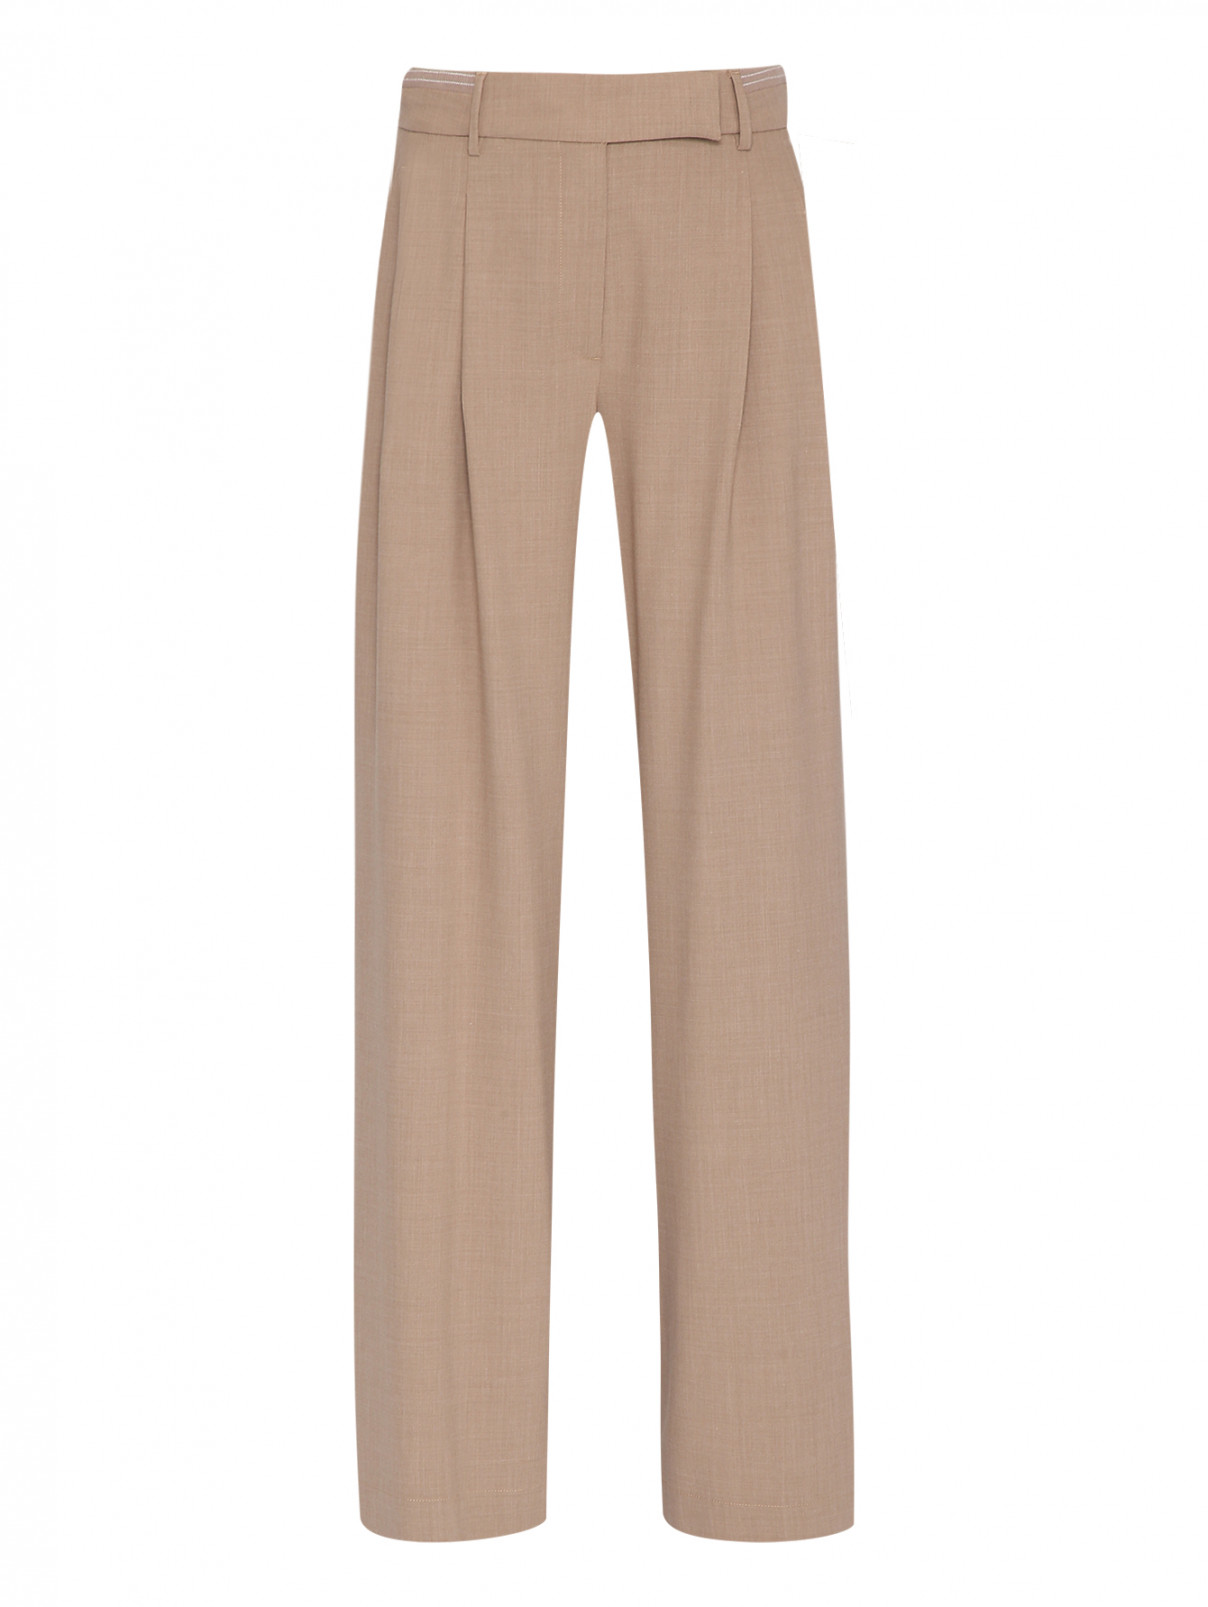 Широкие брюки из шерсти Lorena Antoniazzi  –  Общий вид  – Цвет:  Бежевый